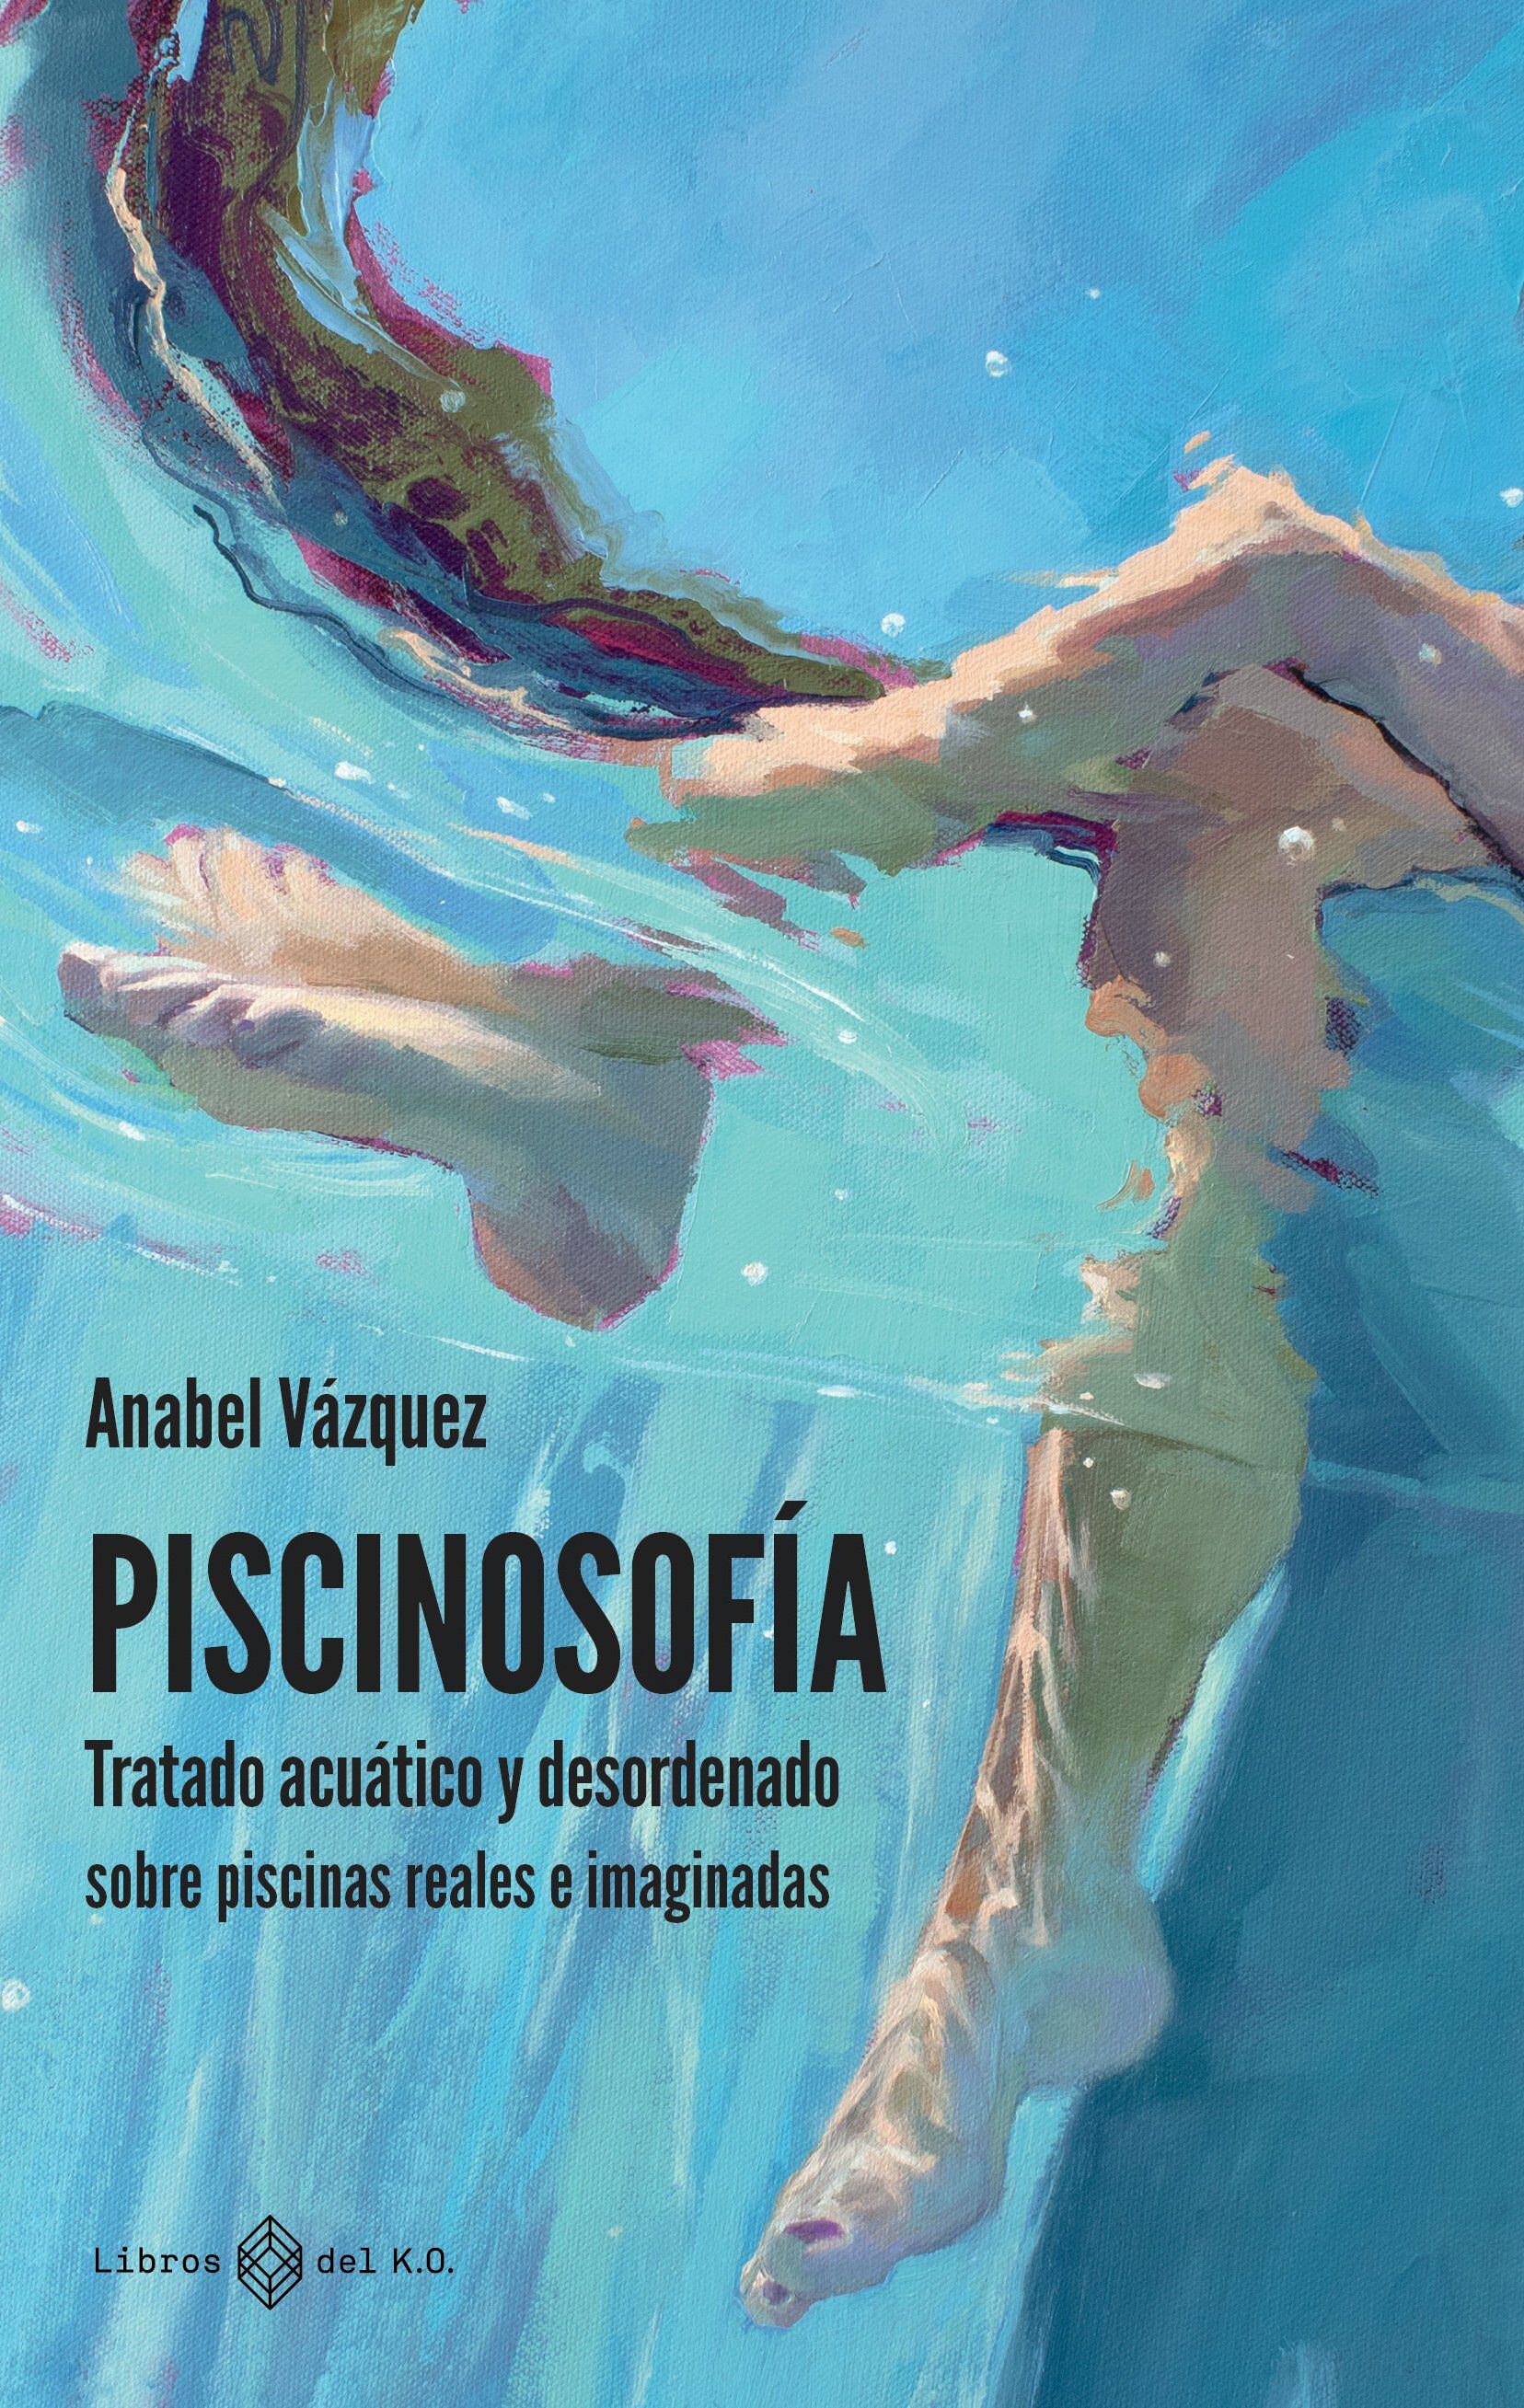 Cubierta del libro 'Piscinosofía', de Anabel Vázquez (Libros del K.O.).